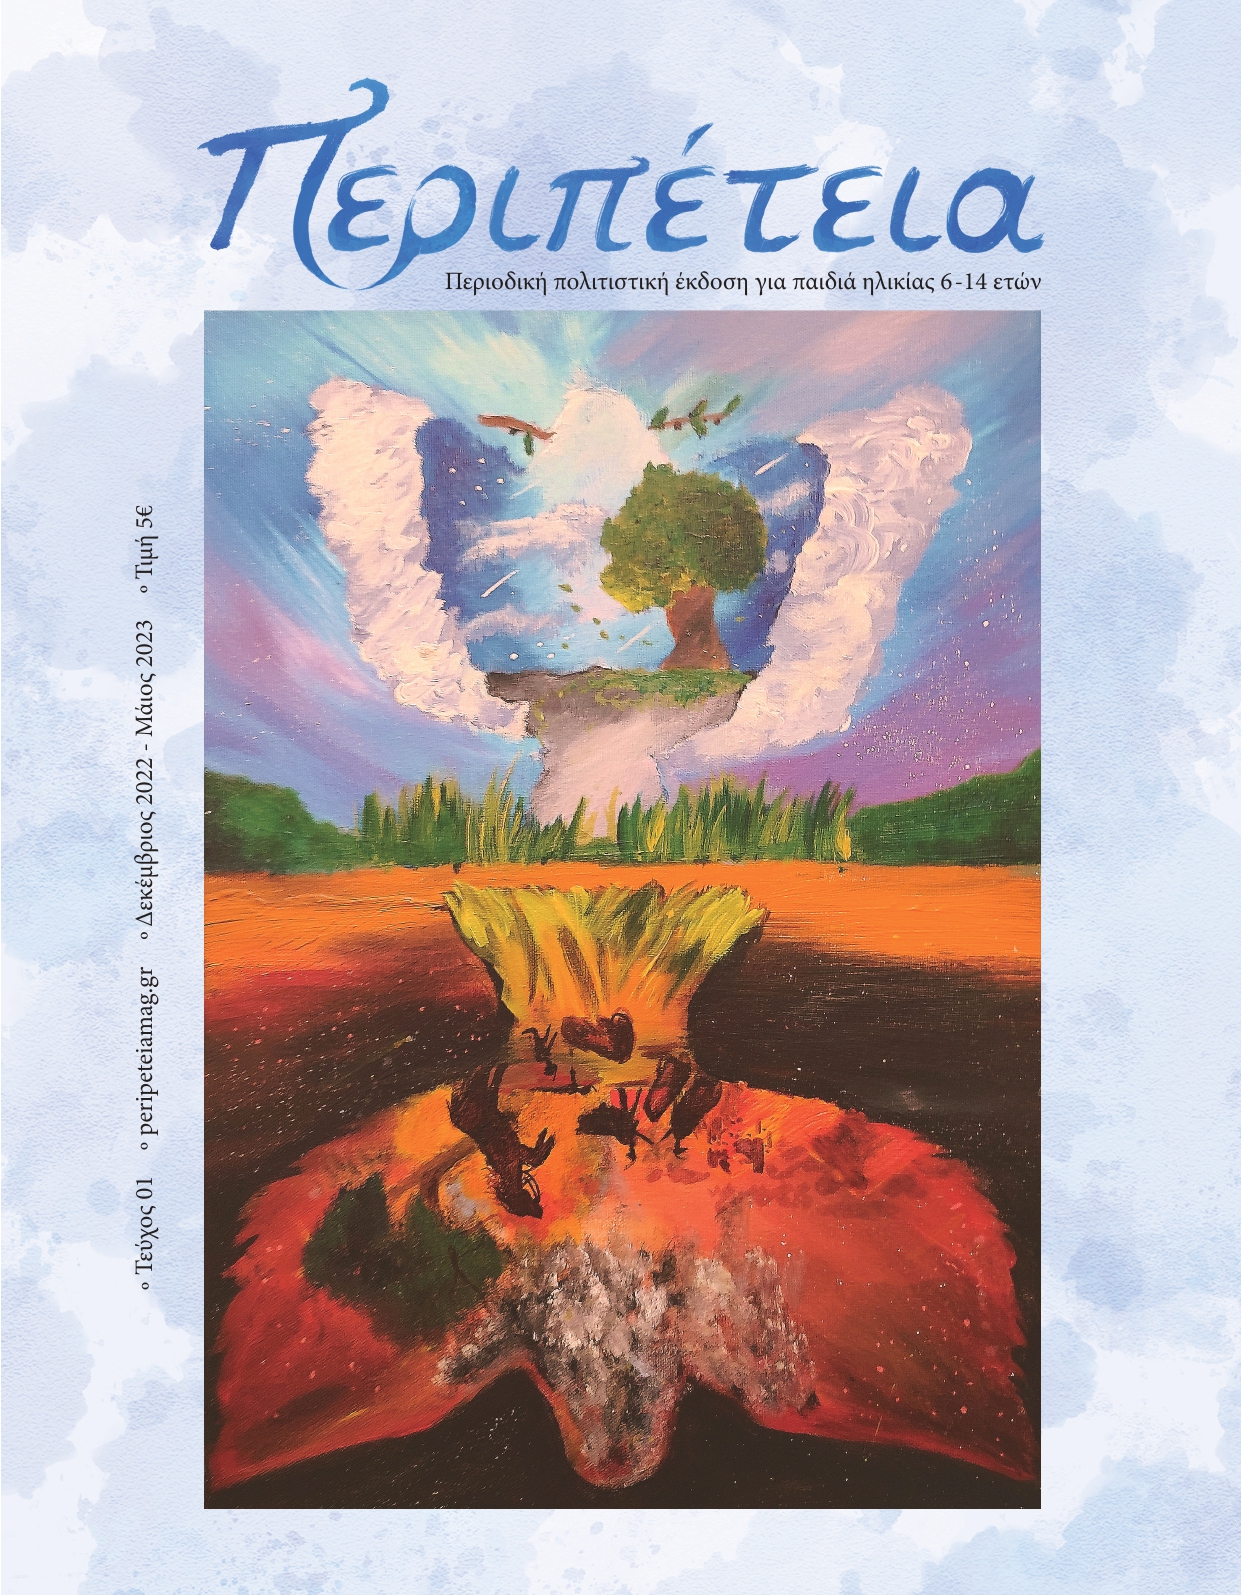 Το περιοδικό της Ράνιας Παπαδοπούλου, το πρώτο πολιτιστικό περιοδικό για παιδιά